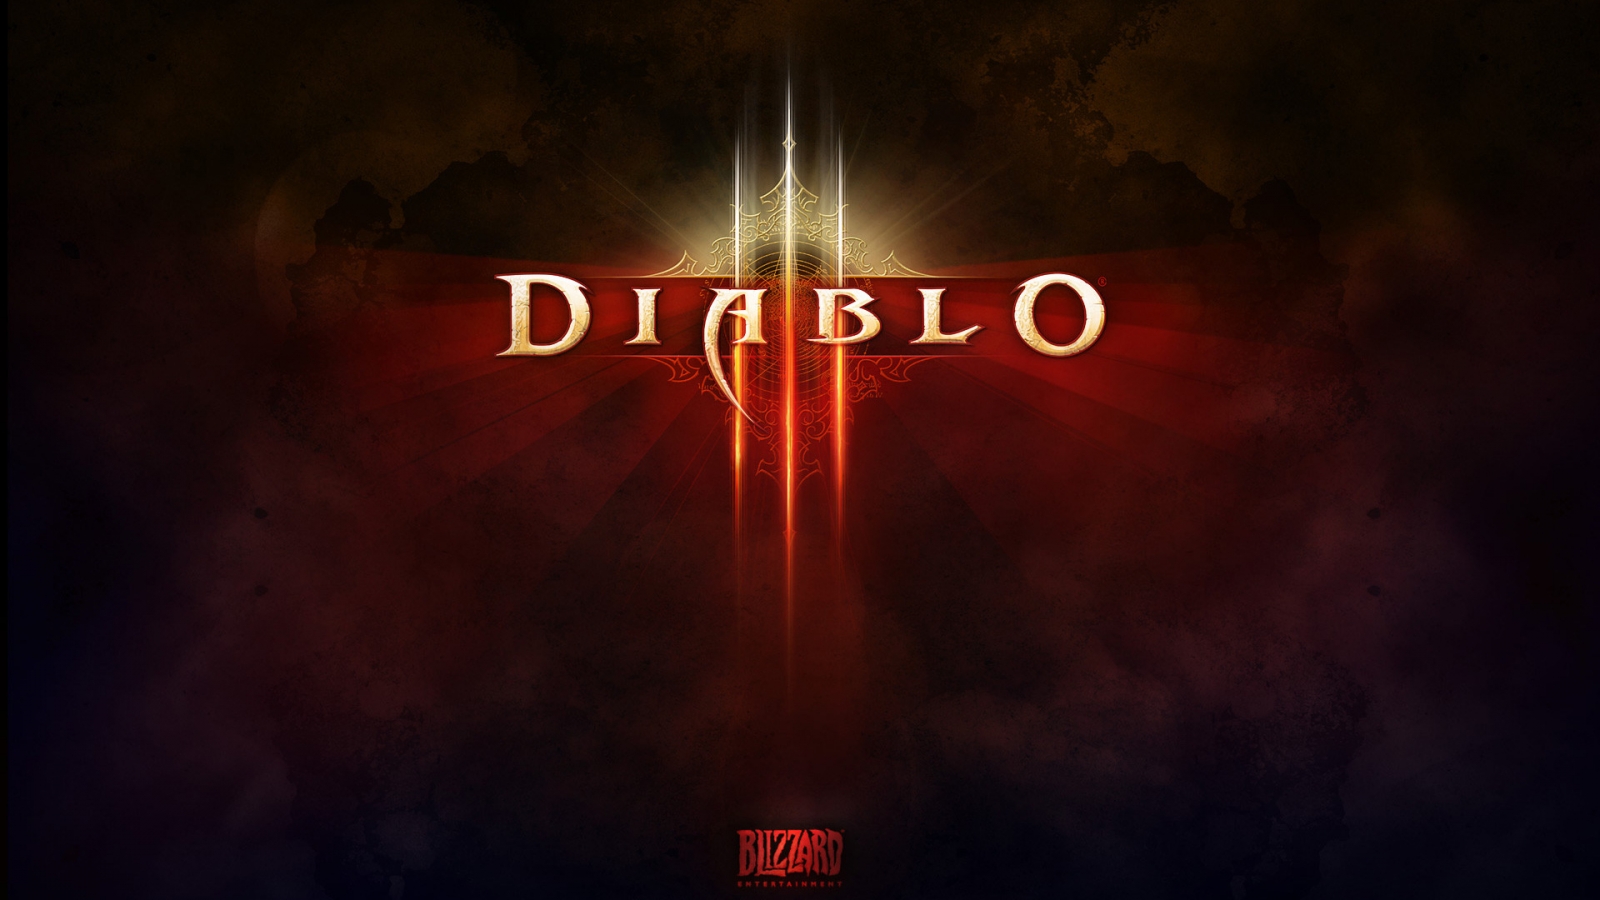 Diablo 3 Game Logo for 1600 x 900 HDTV resolution